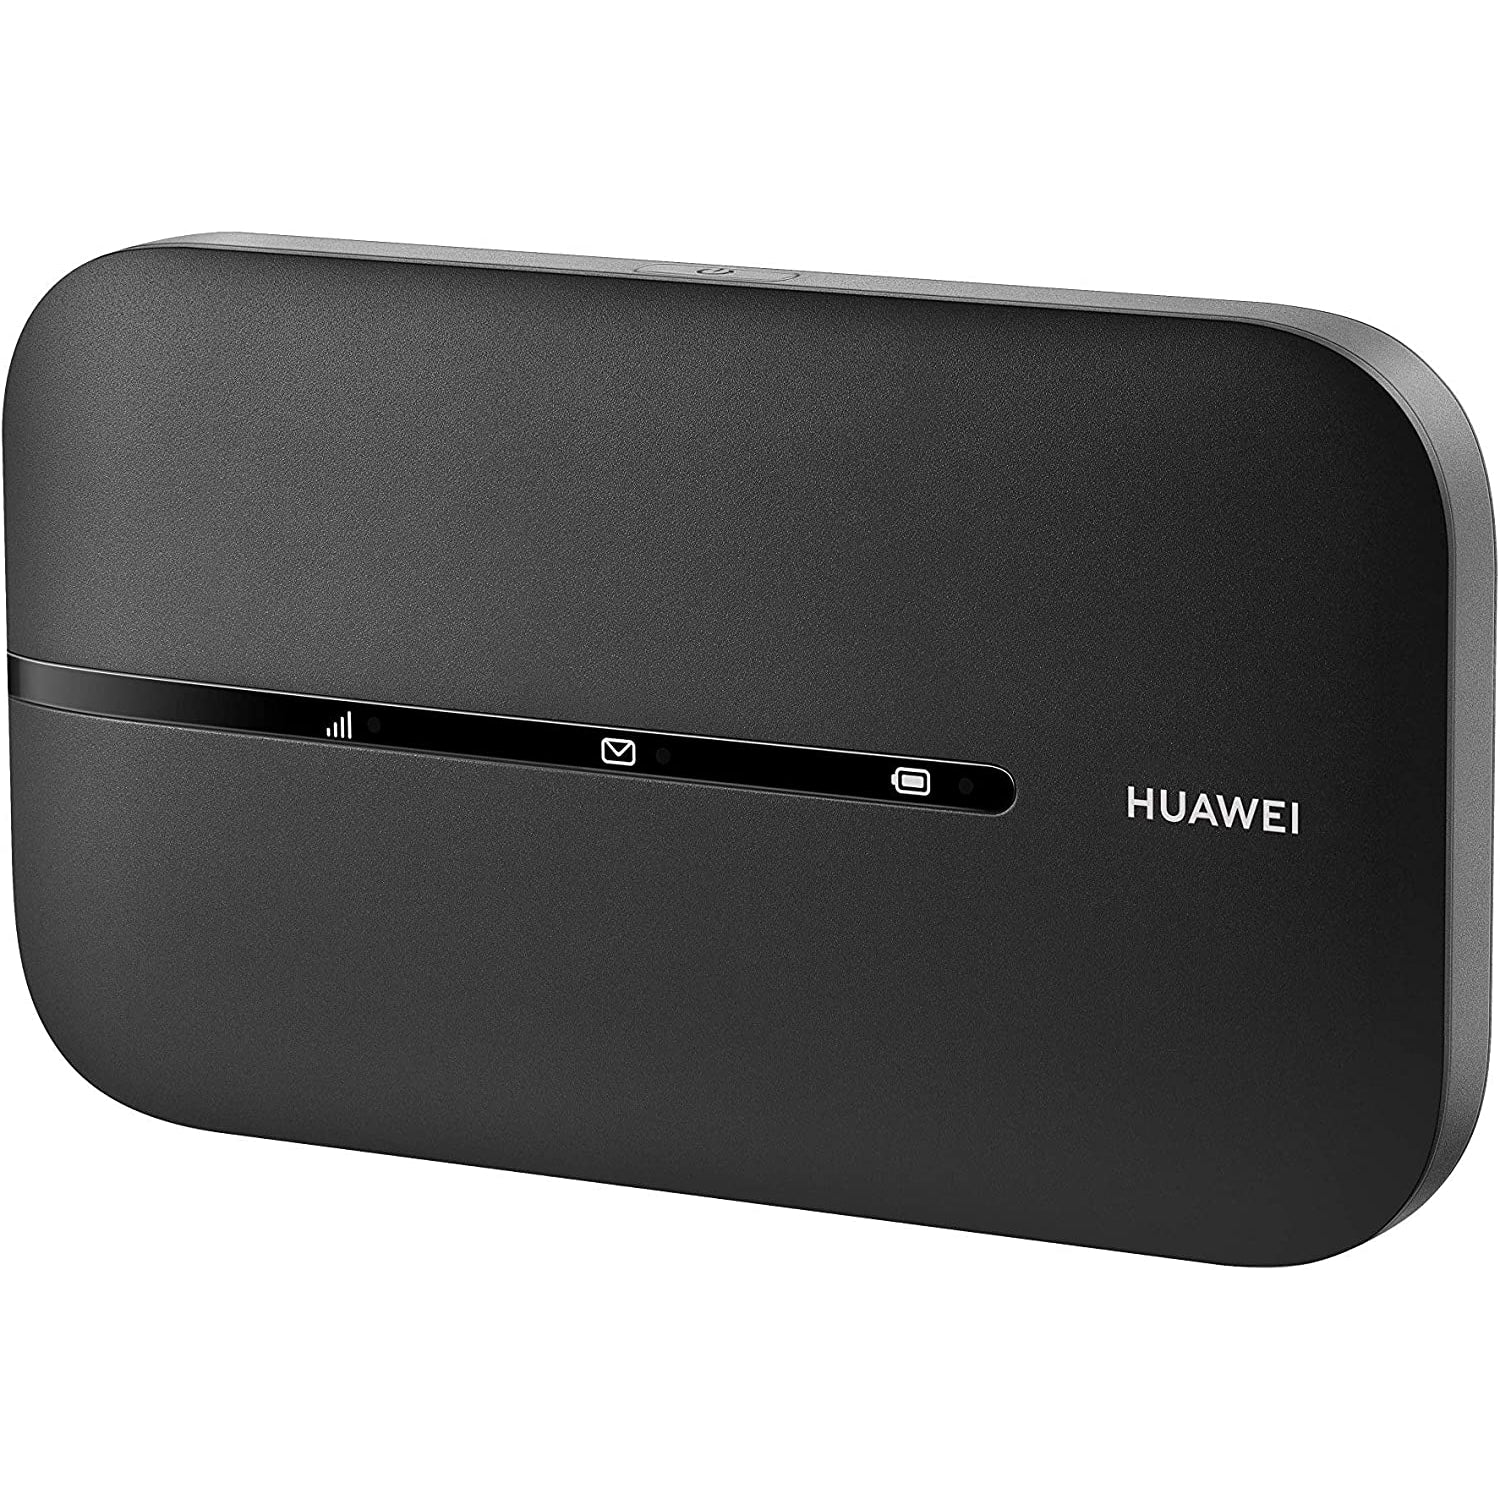 Huawei E5783B-230 4G LTE Wi-Fi Hotspot Modem - Refurbished Pristine